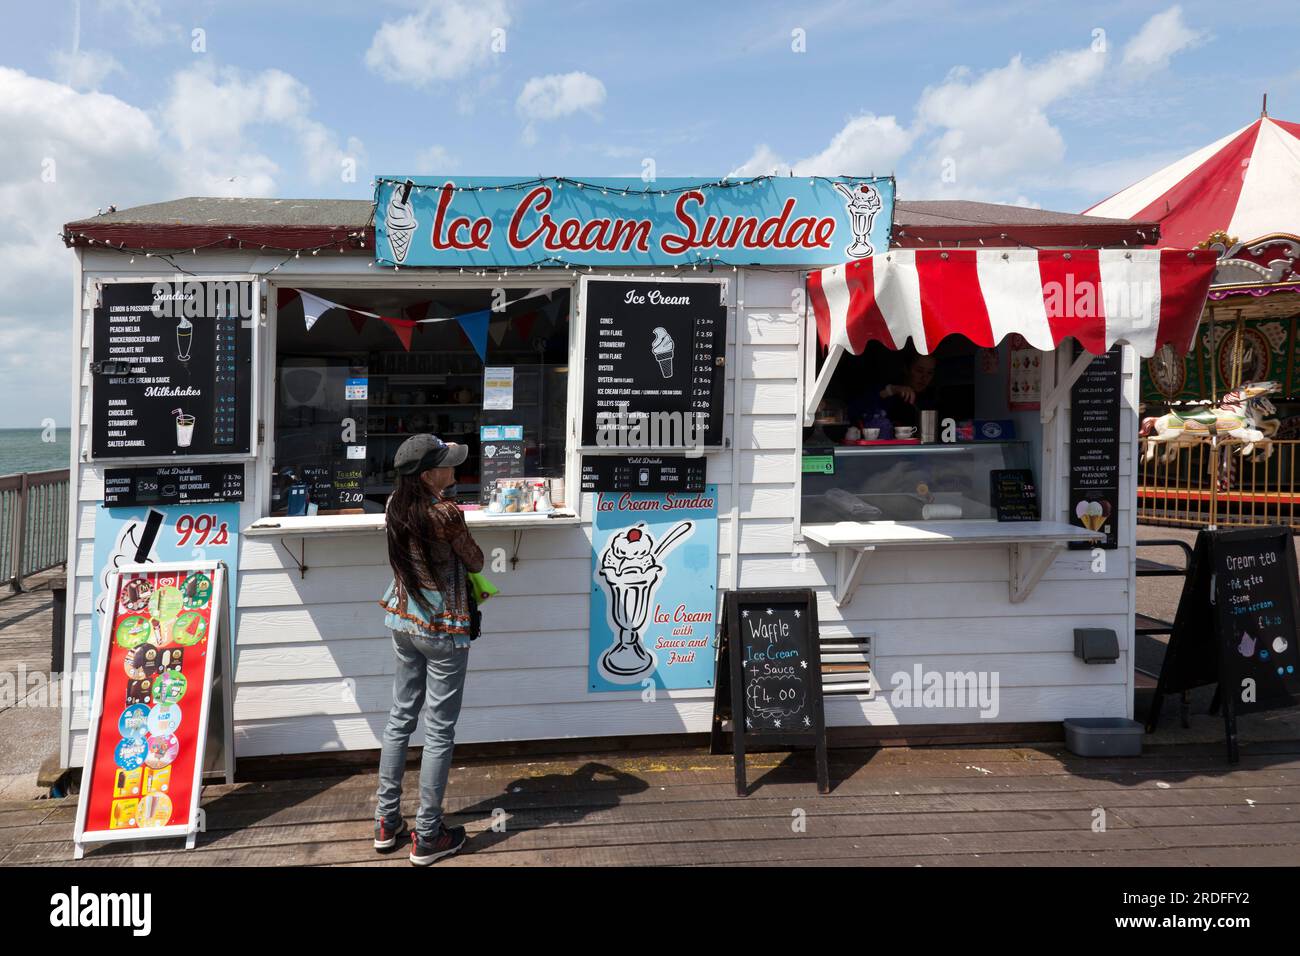 Dame achetant une glace, du Ice Cream Sunday Shop, sur Herne Bay Pier, Thanet, Kent Banque D'Images